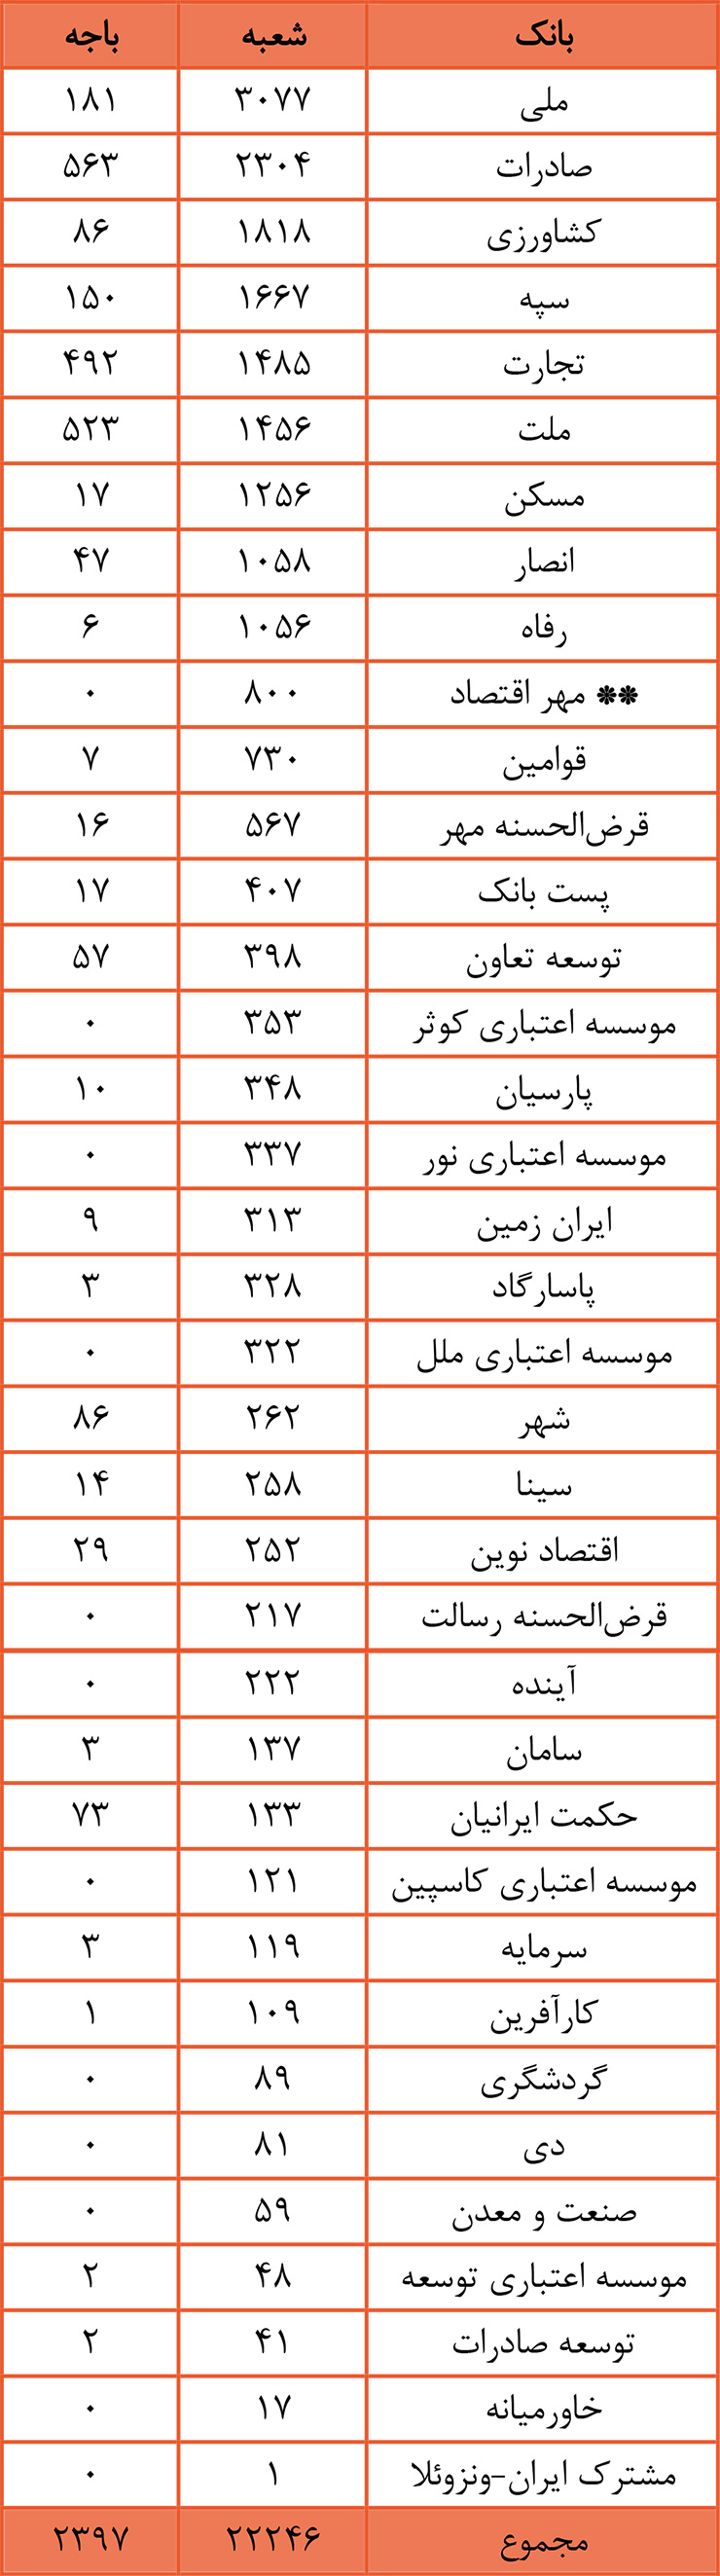 پایگاه خبری آرمان اقتصادی | جامع‌ترین رسانه اقتصادی BraBan-Small-Index-Way2pay-98-02-07 آخرین آمار از تعداد شعب و باجه بانک‌ها در ایران 